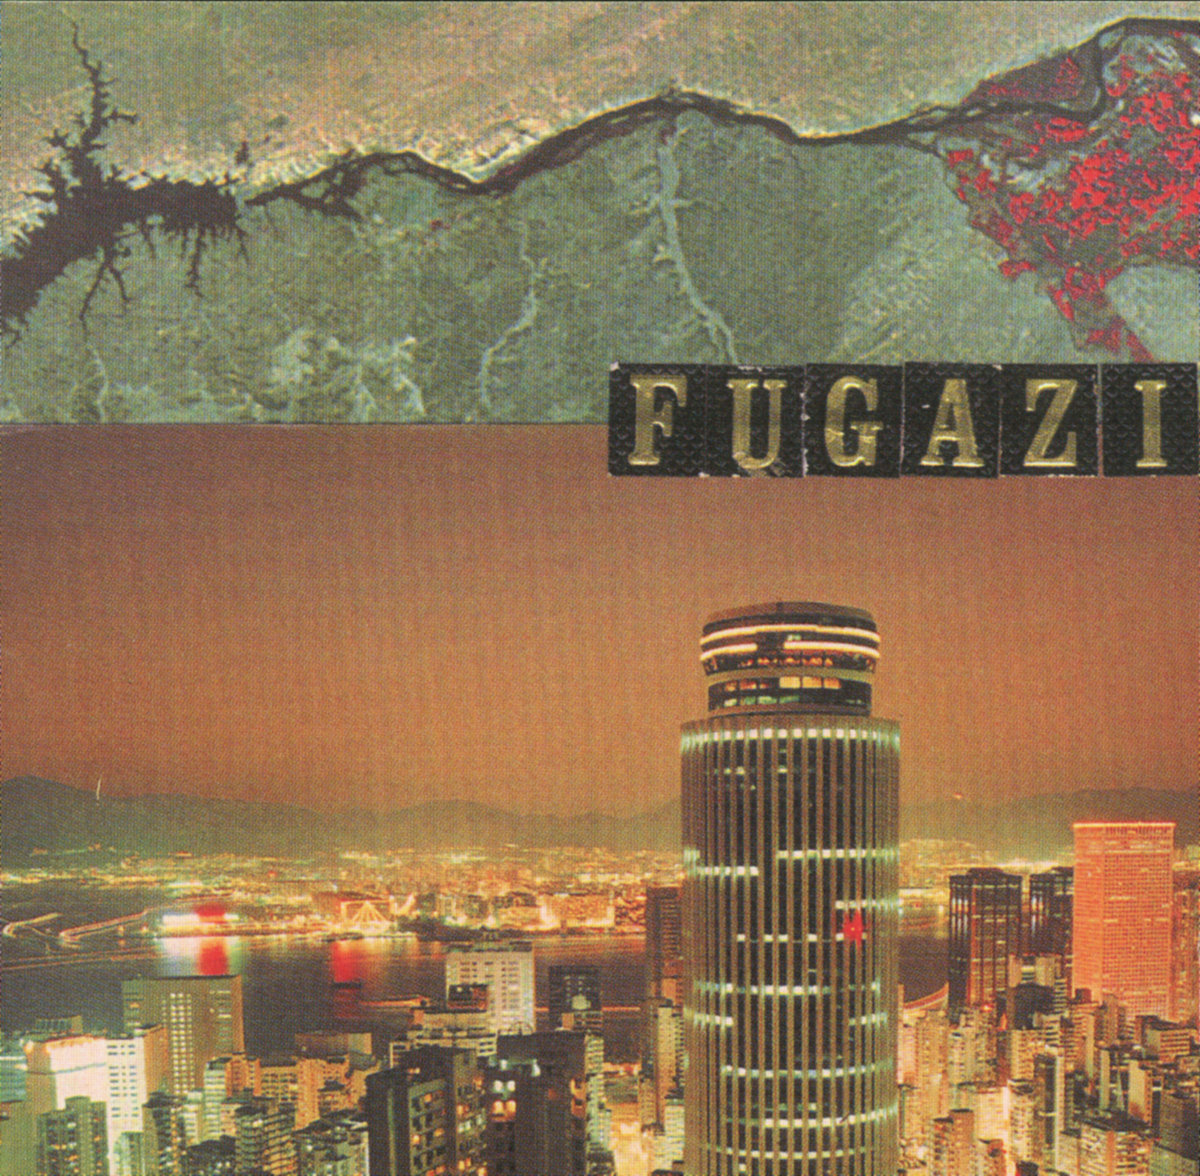 Enregistré aux studios Inner Ear en mars et septembre 1997. Mixé par Fugazi et réalisé par Don Zientara.